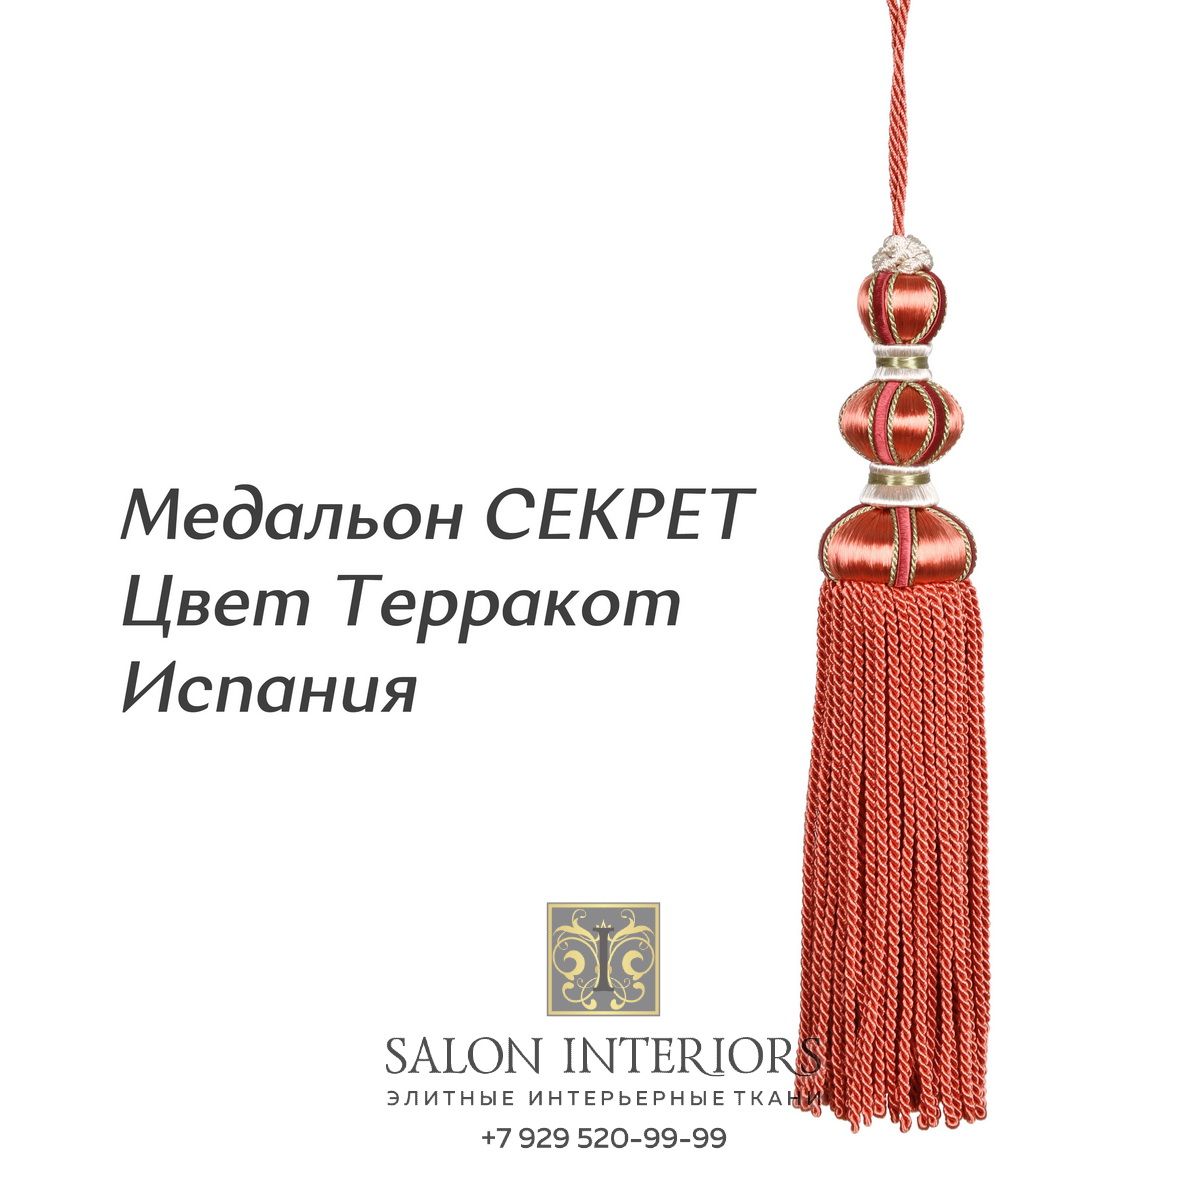 Медальон "СЕКРЕТ" Арт MK996A-1327 Цвет Терракот разм.27см Испания